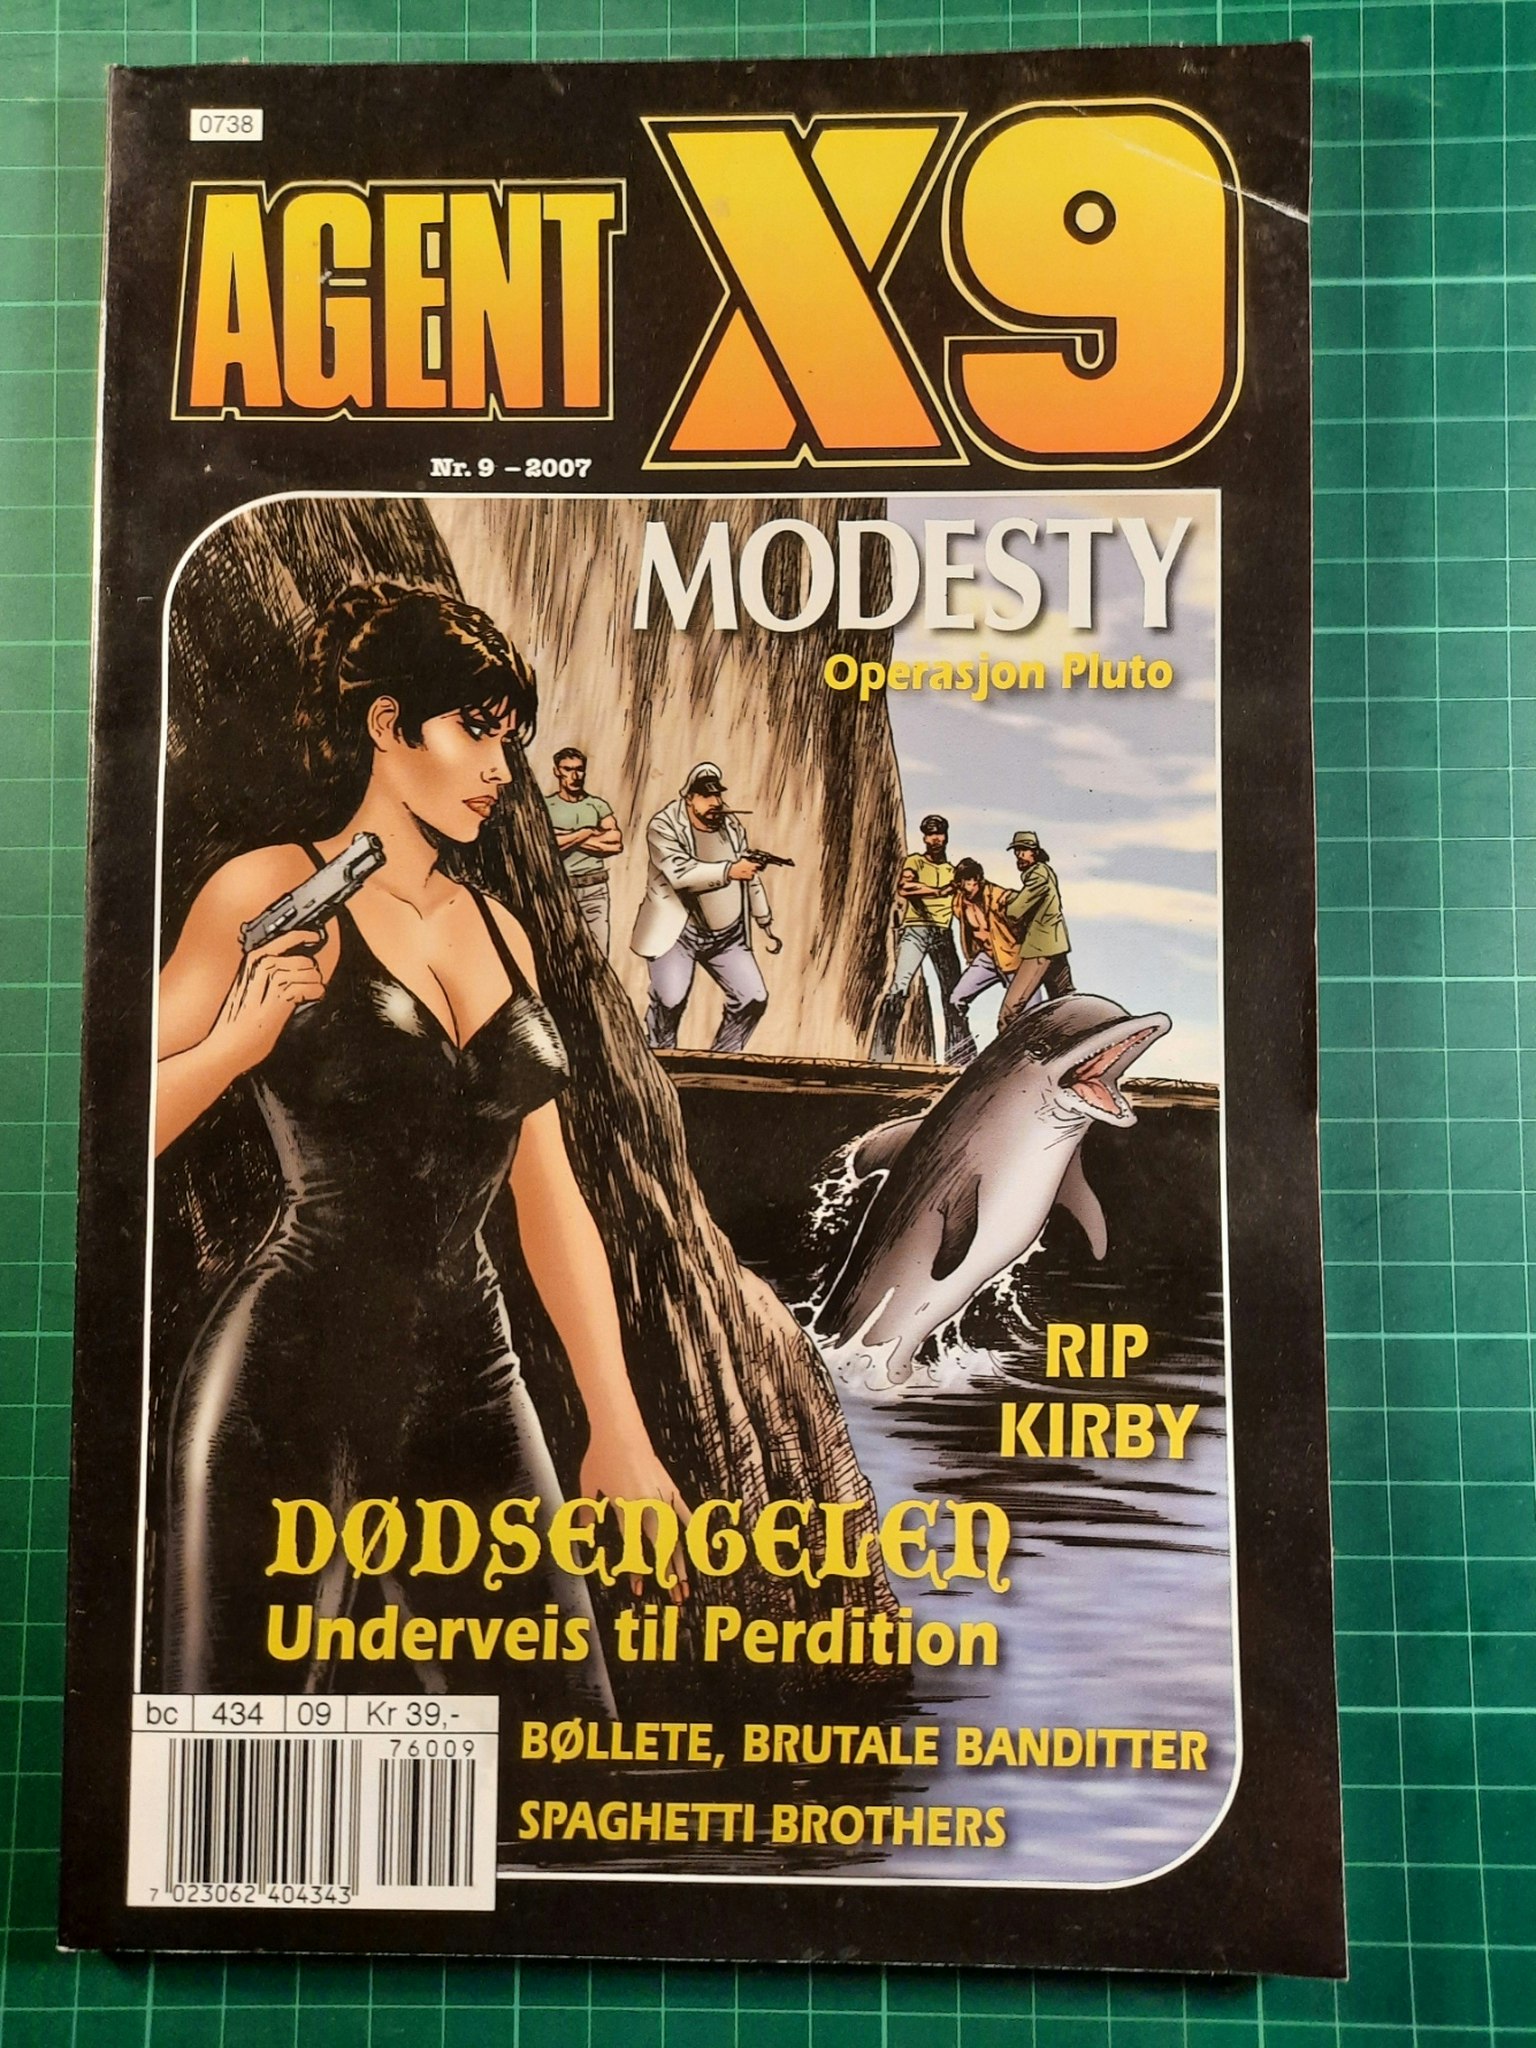 Agent X9 2007 - 09